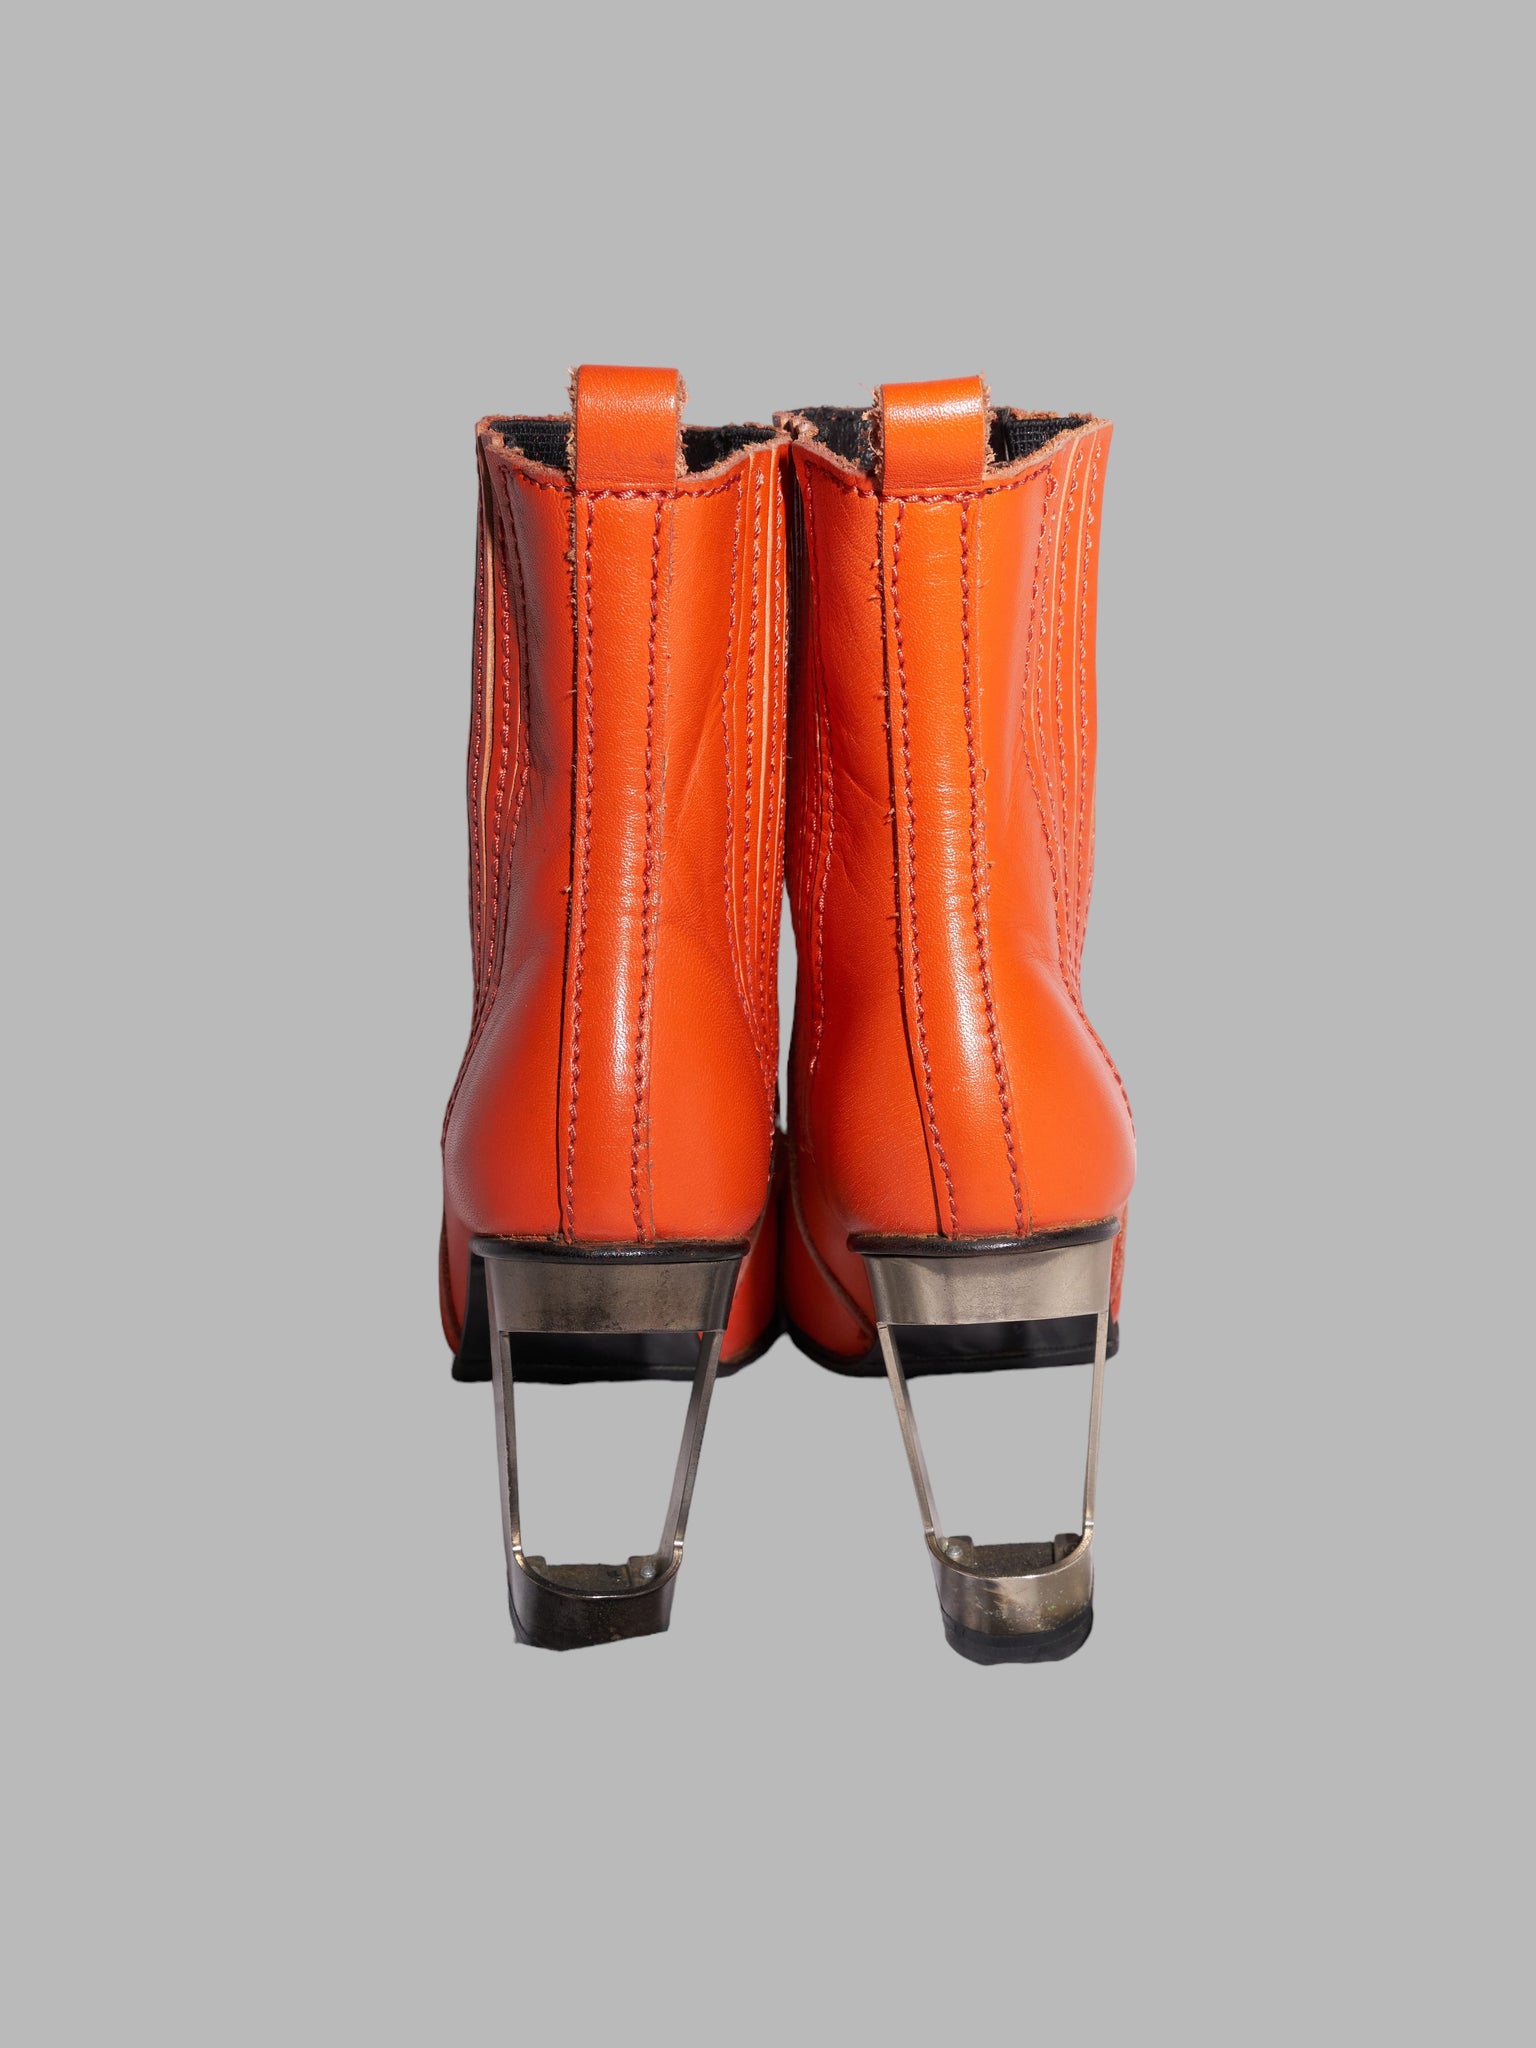 Dirk Bikkembergs 1990s orange leather steel heel cutout high heel boots - UK 4